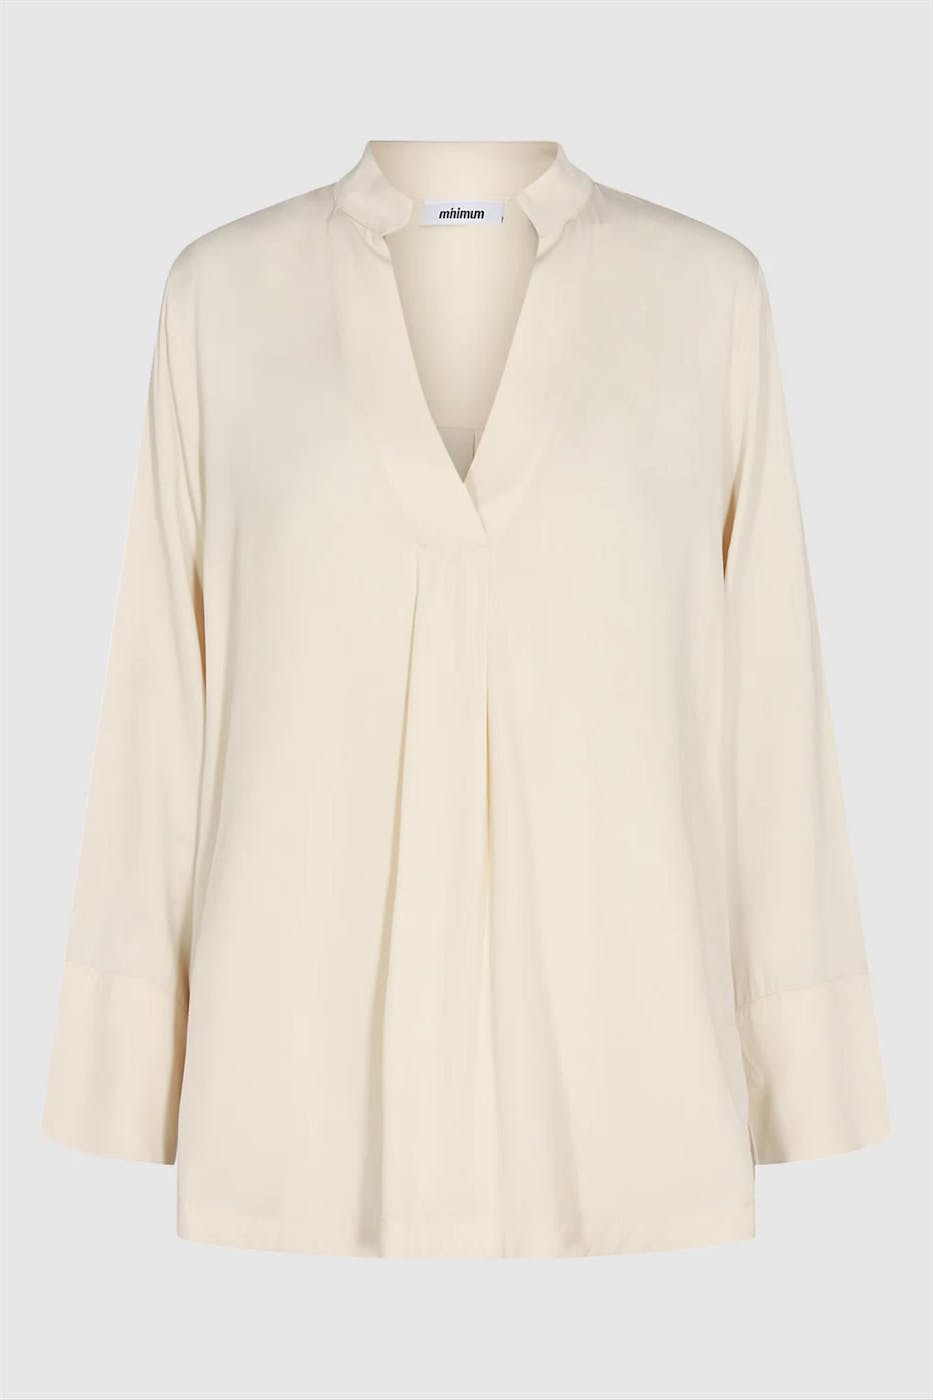 Minimum - Ecru Cilles blouse